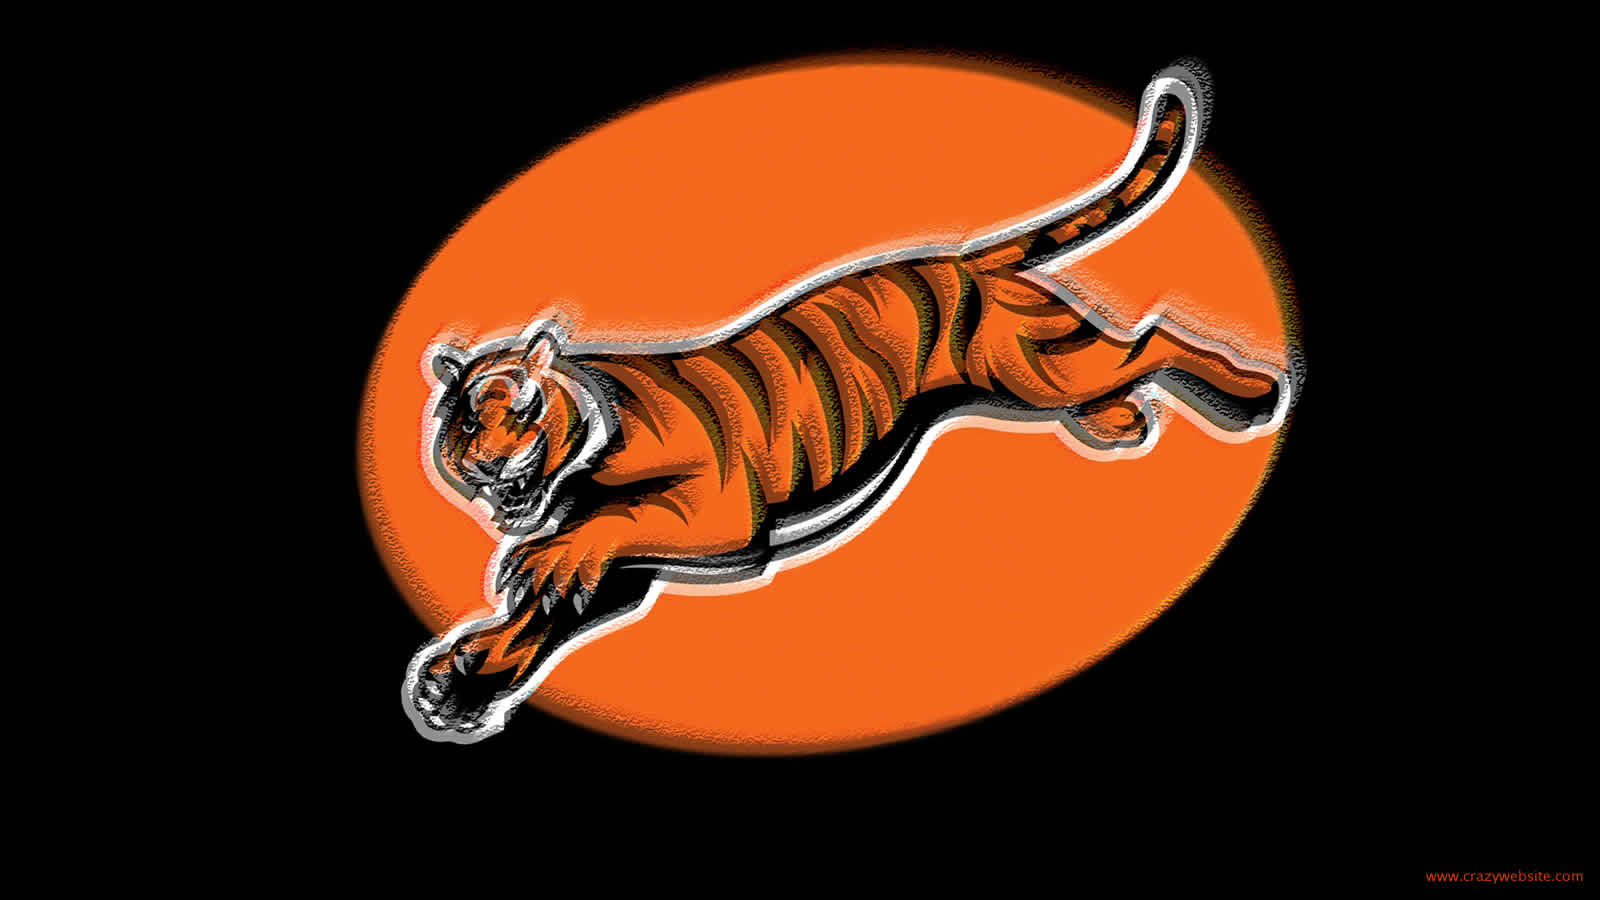 Cincinnati Bengals football team tiger logo wallpaper click thumbnail